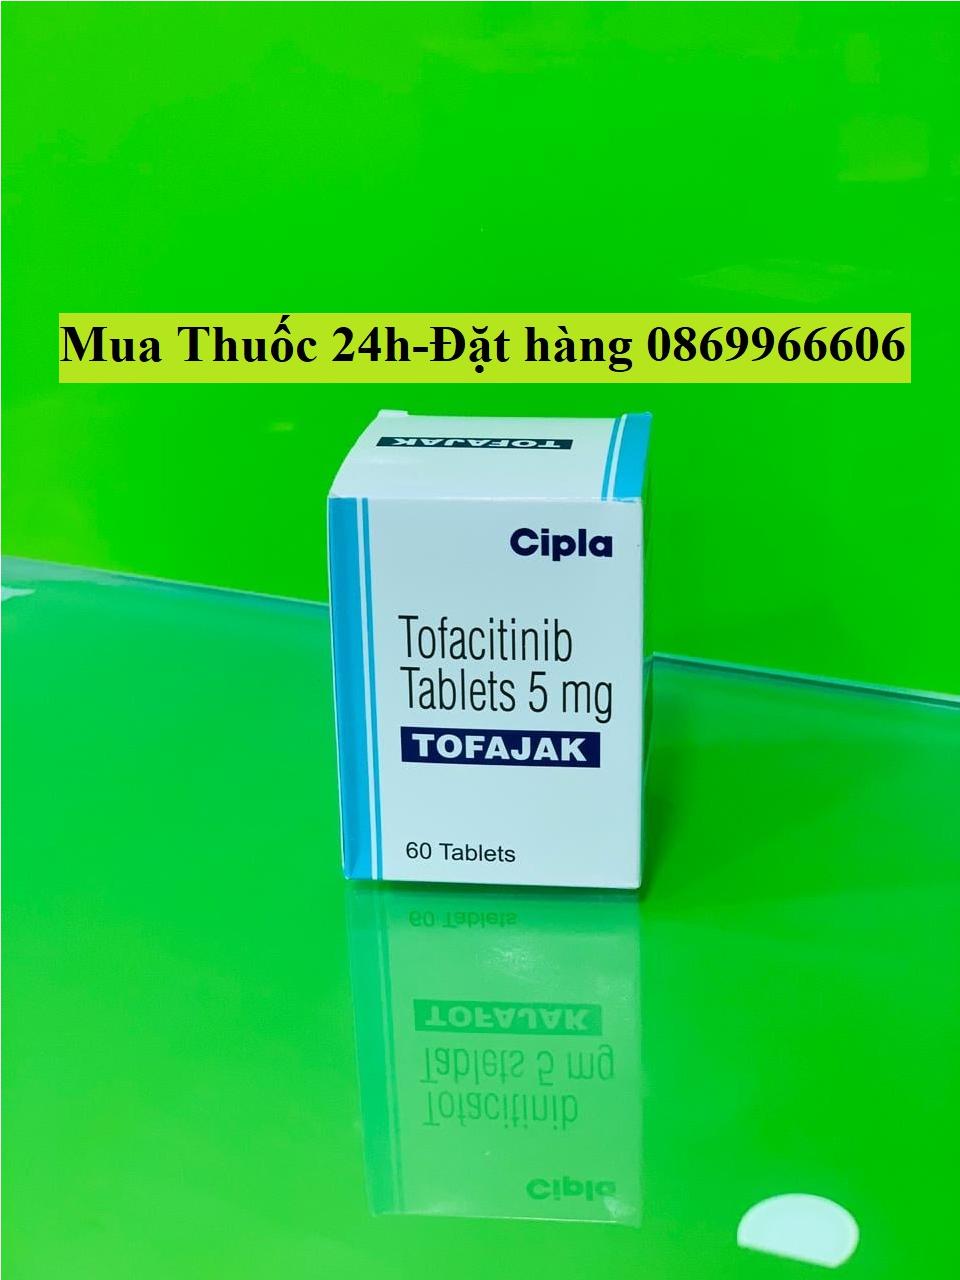 Thuốc Tofajak Tofacitinib 5mg giá bao nhiêu mua ở đâu